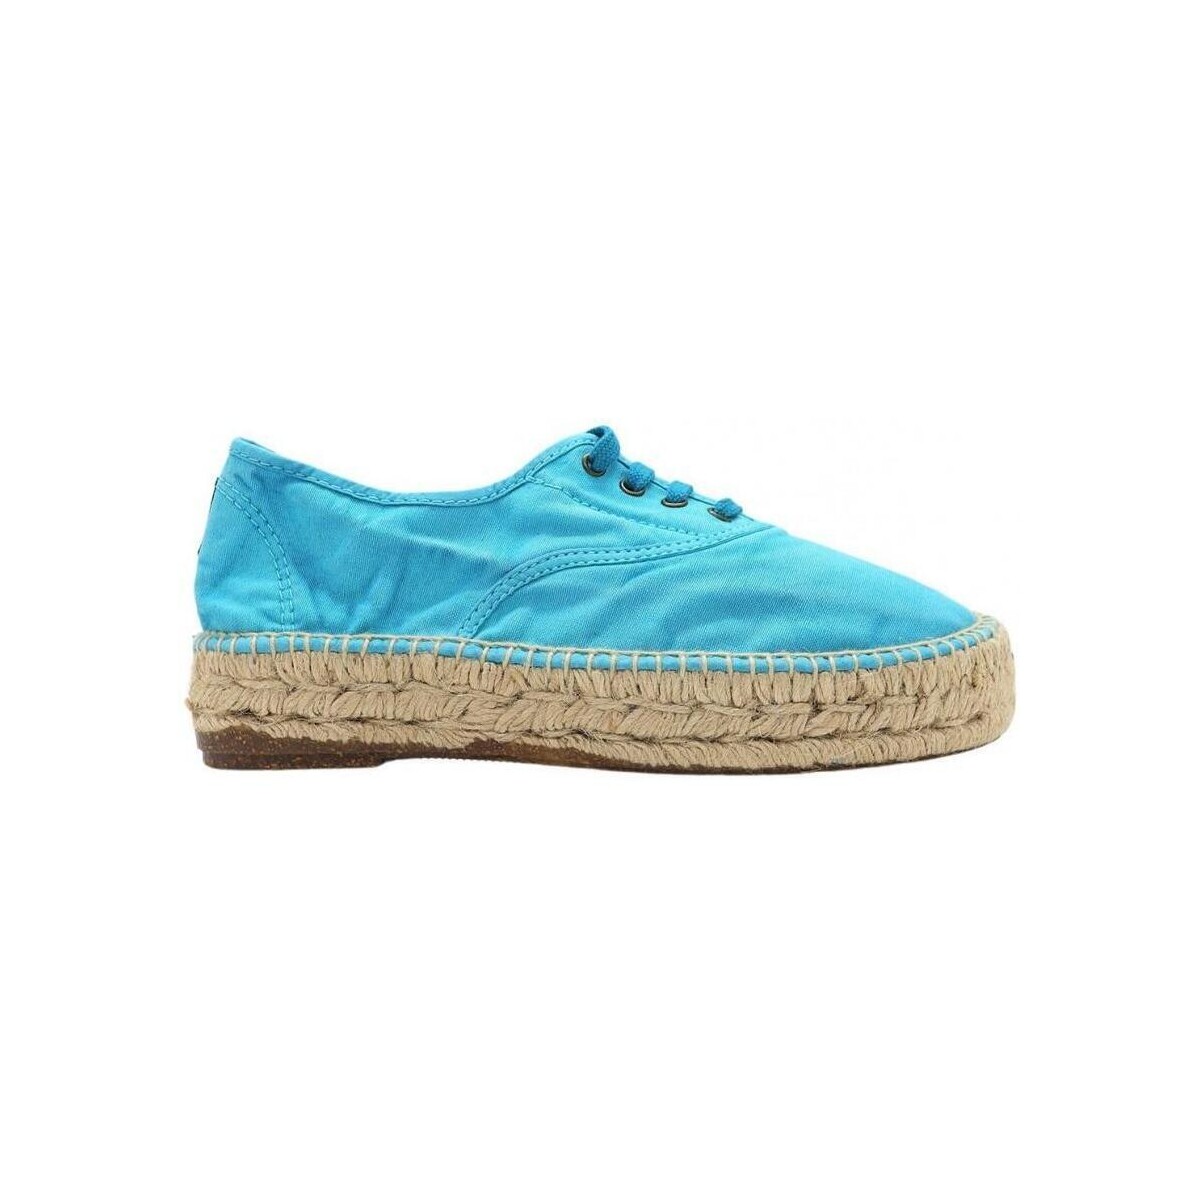 Cipők Női Gyékény talpú cipők Natural World 687E - Aguamar Kék